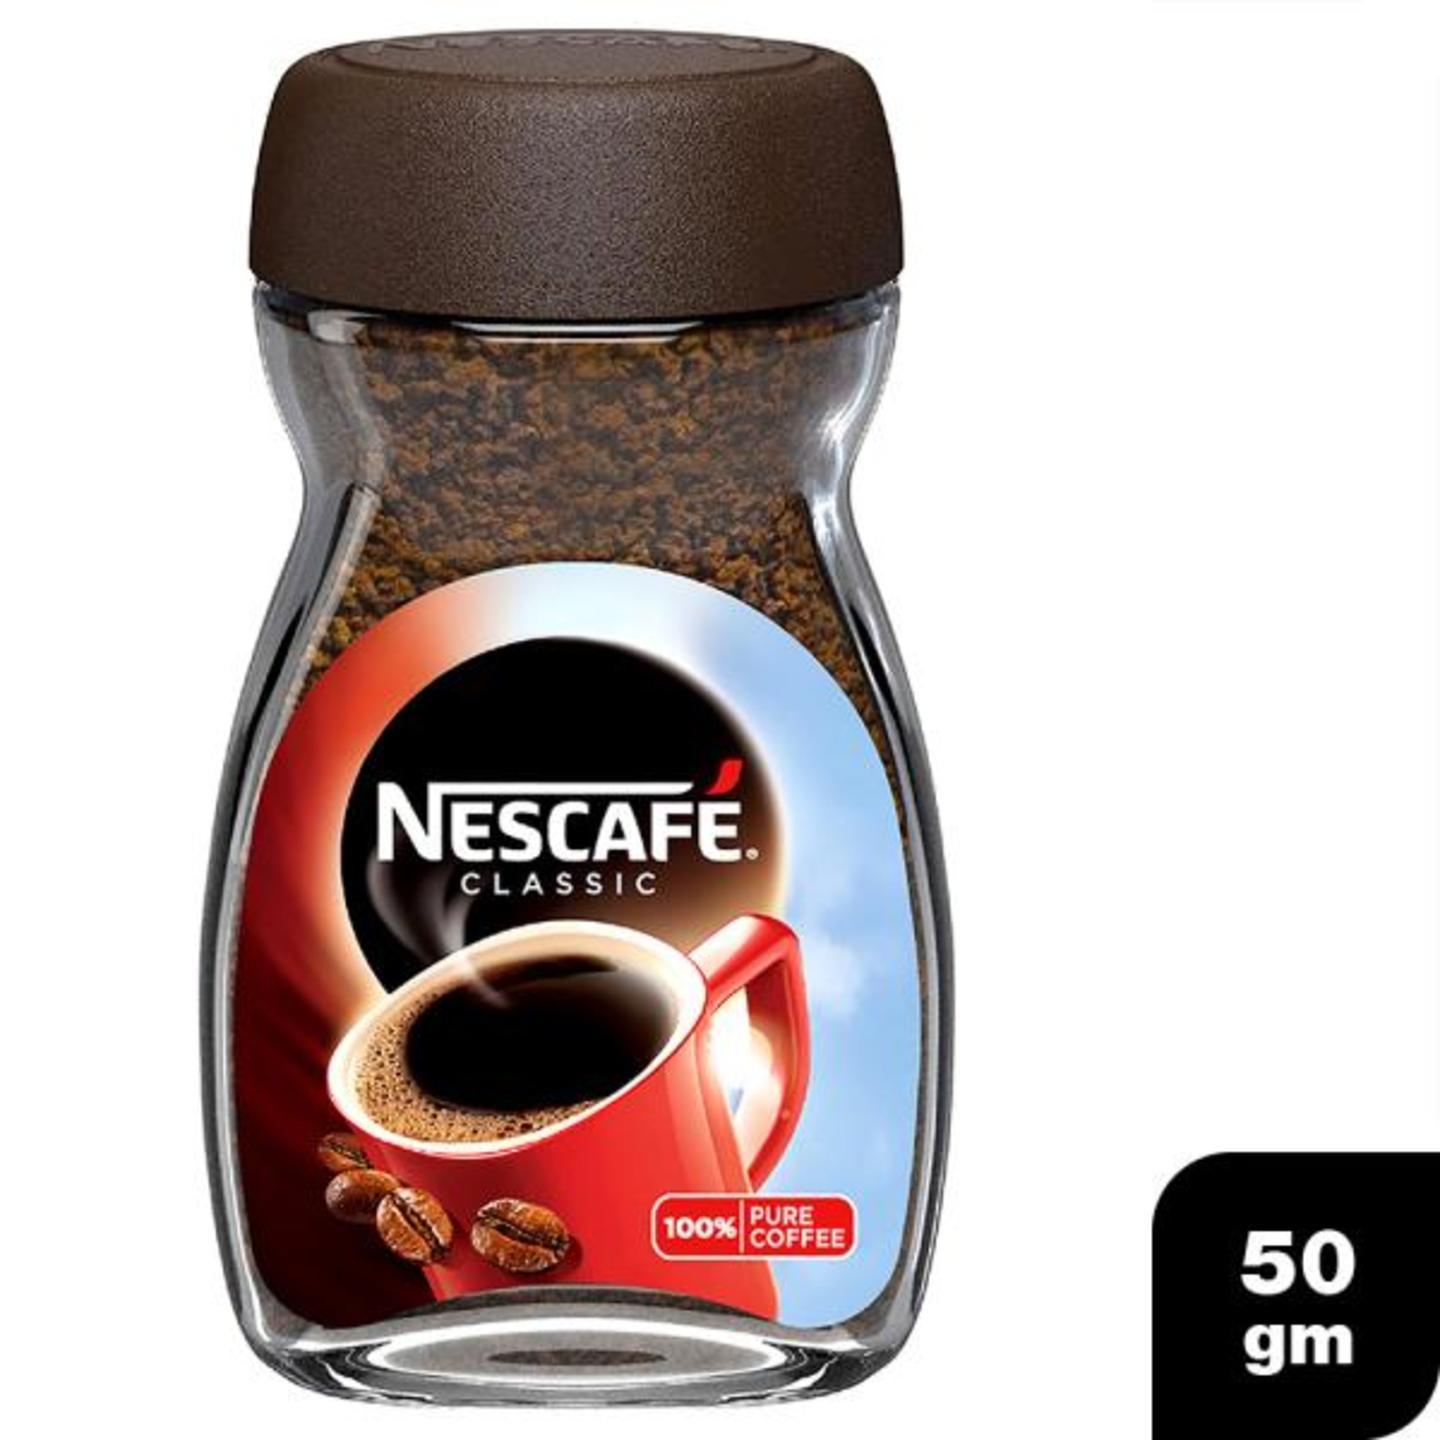 Nescafe Classic Instant Coffee 50 g Jar